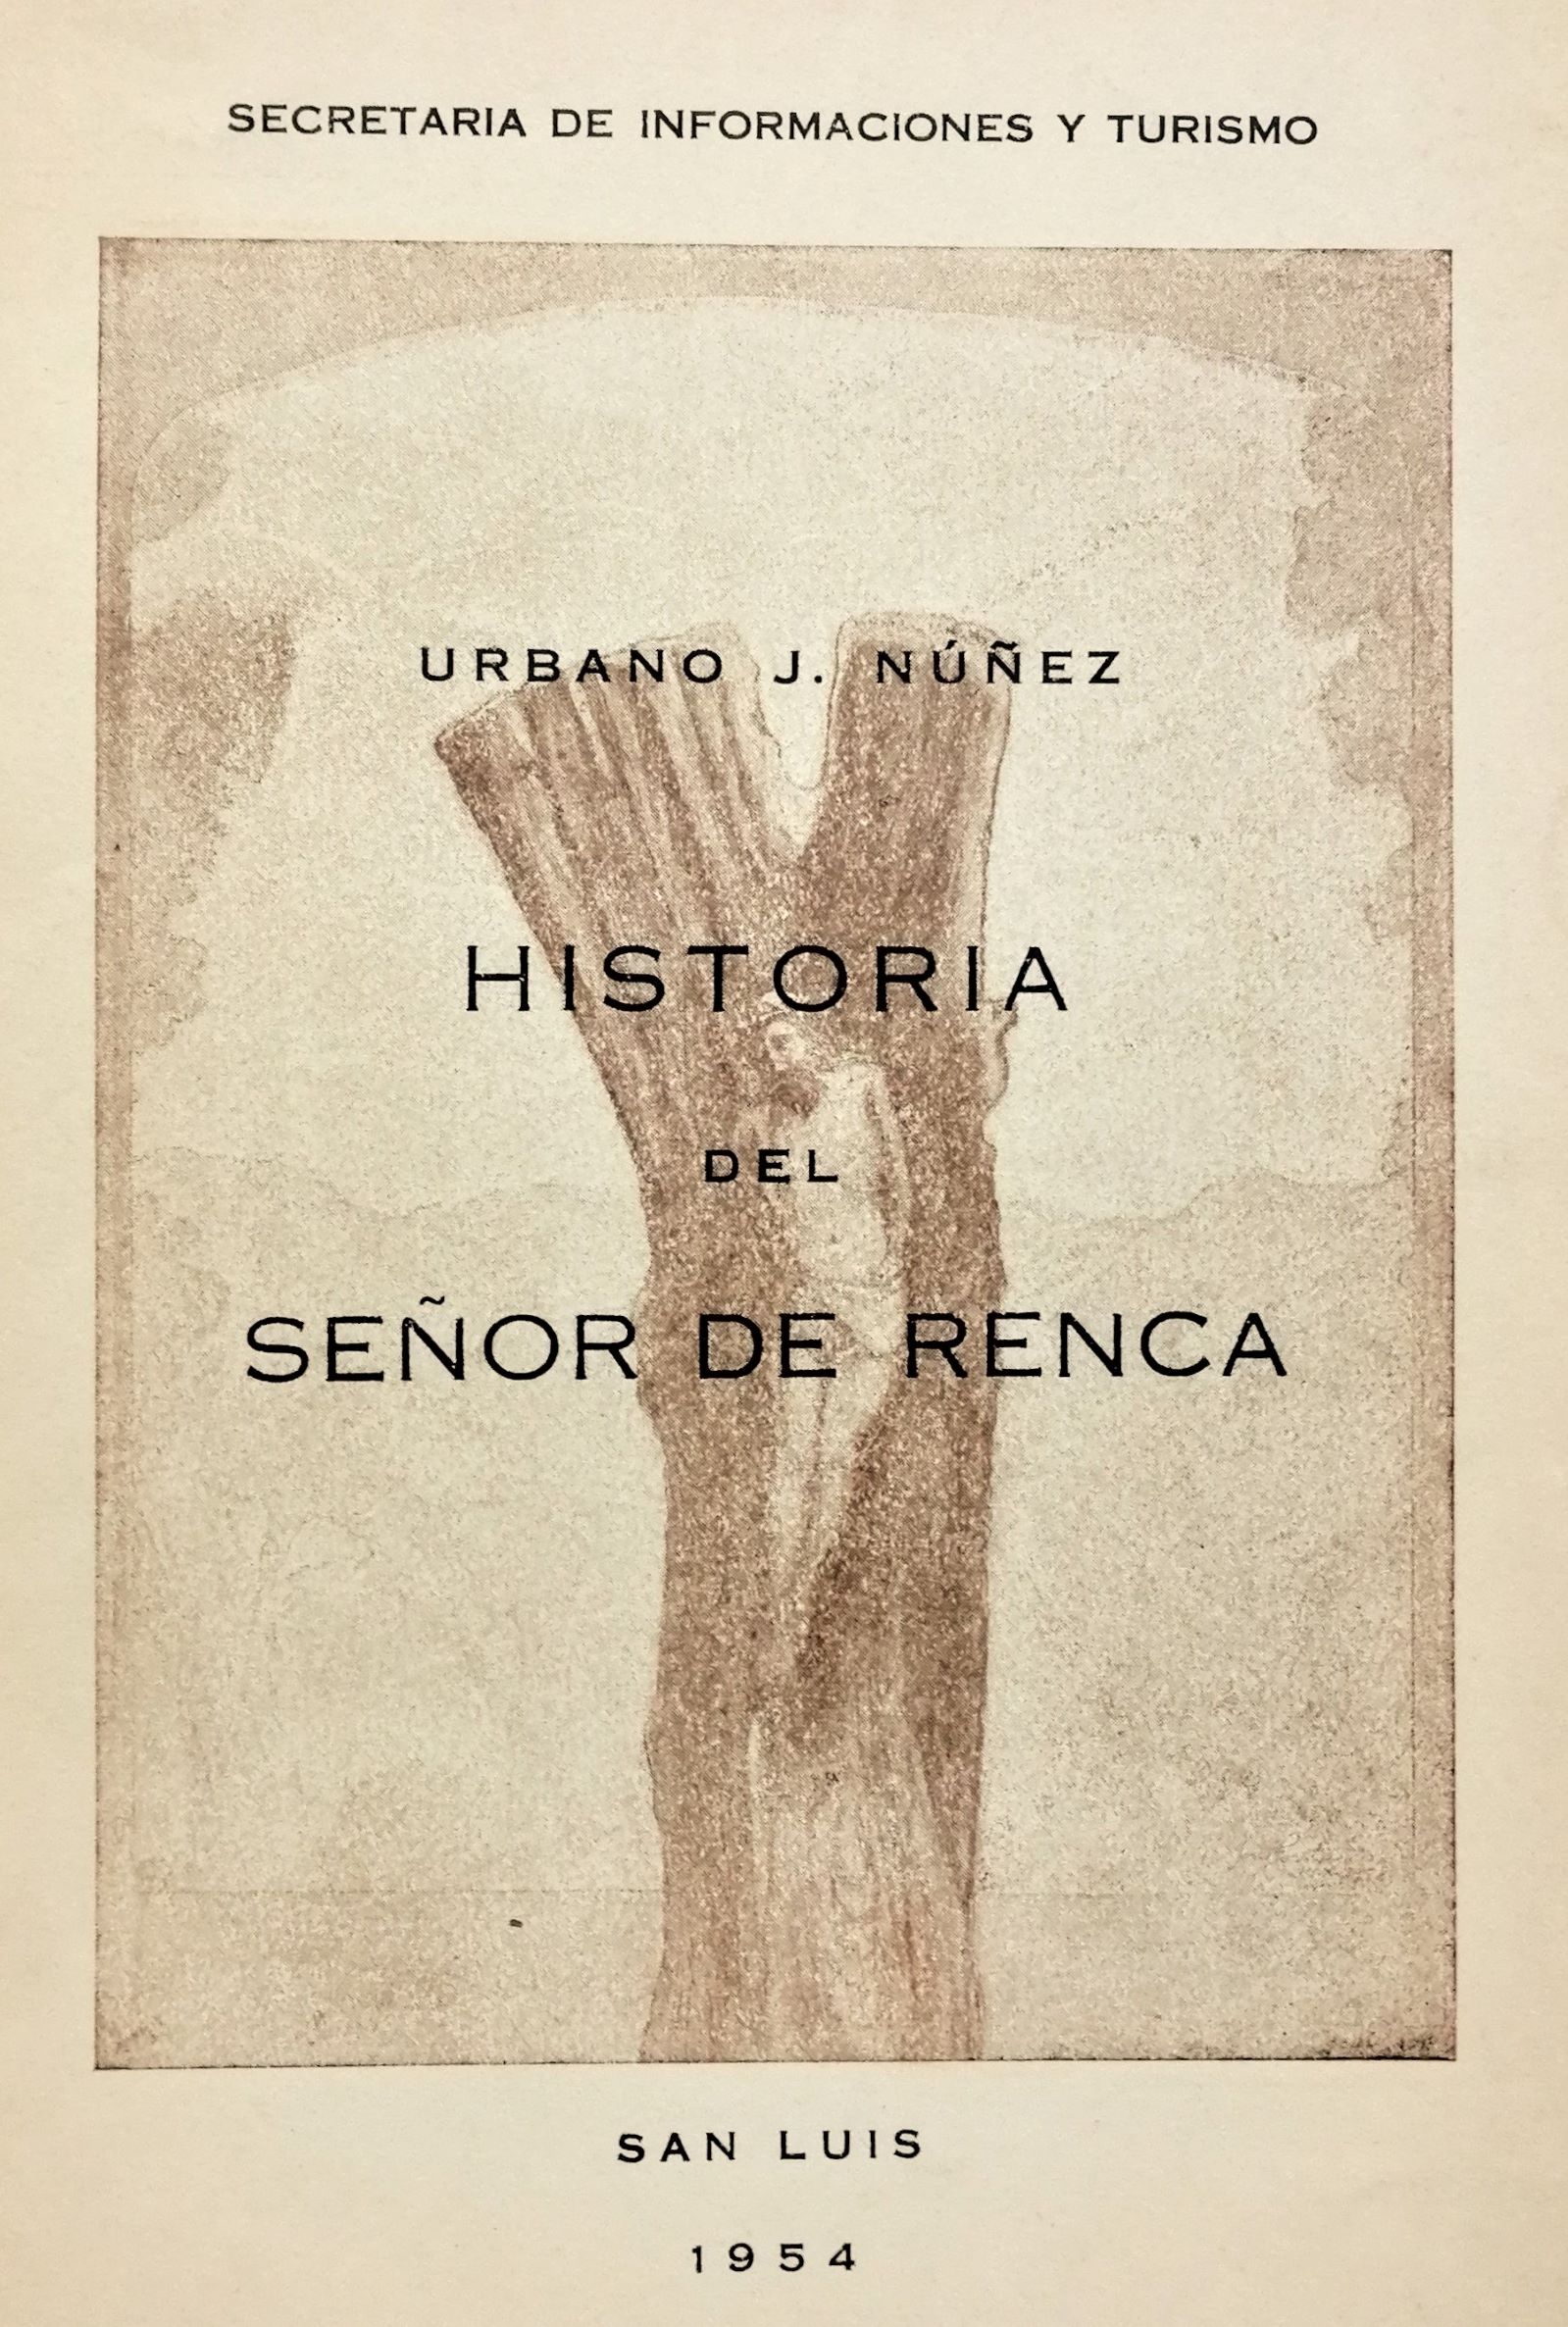 Urbano J. Nuñez - Historia del señor renca